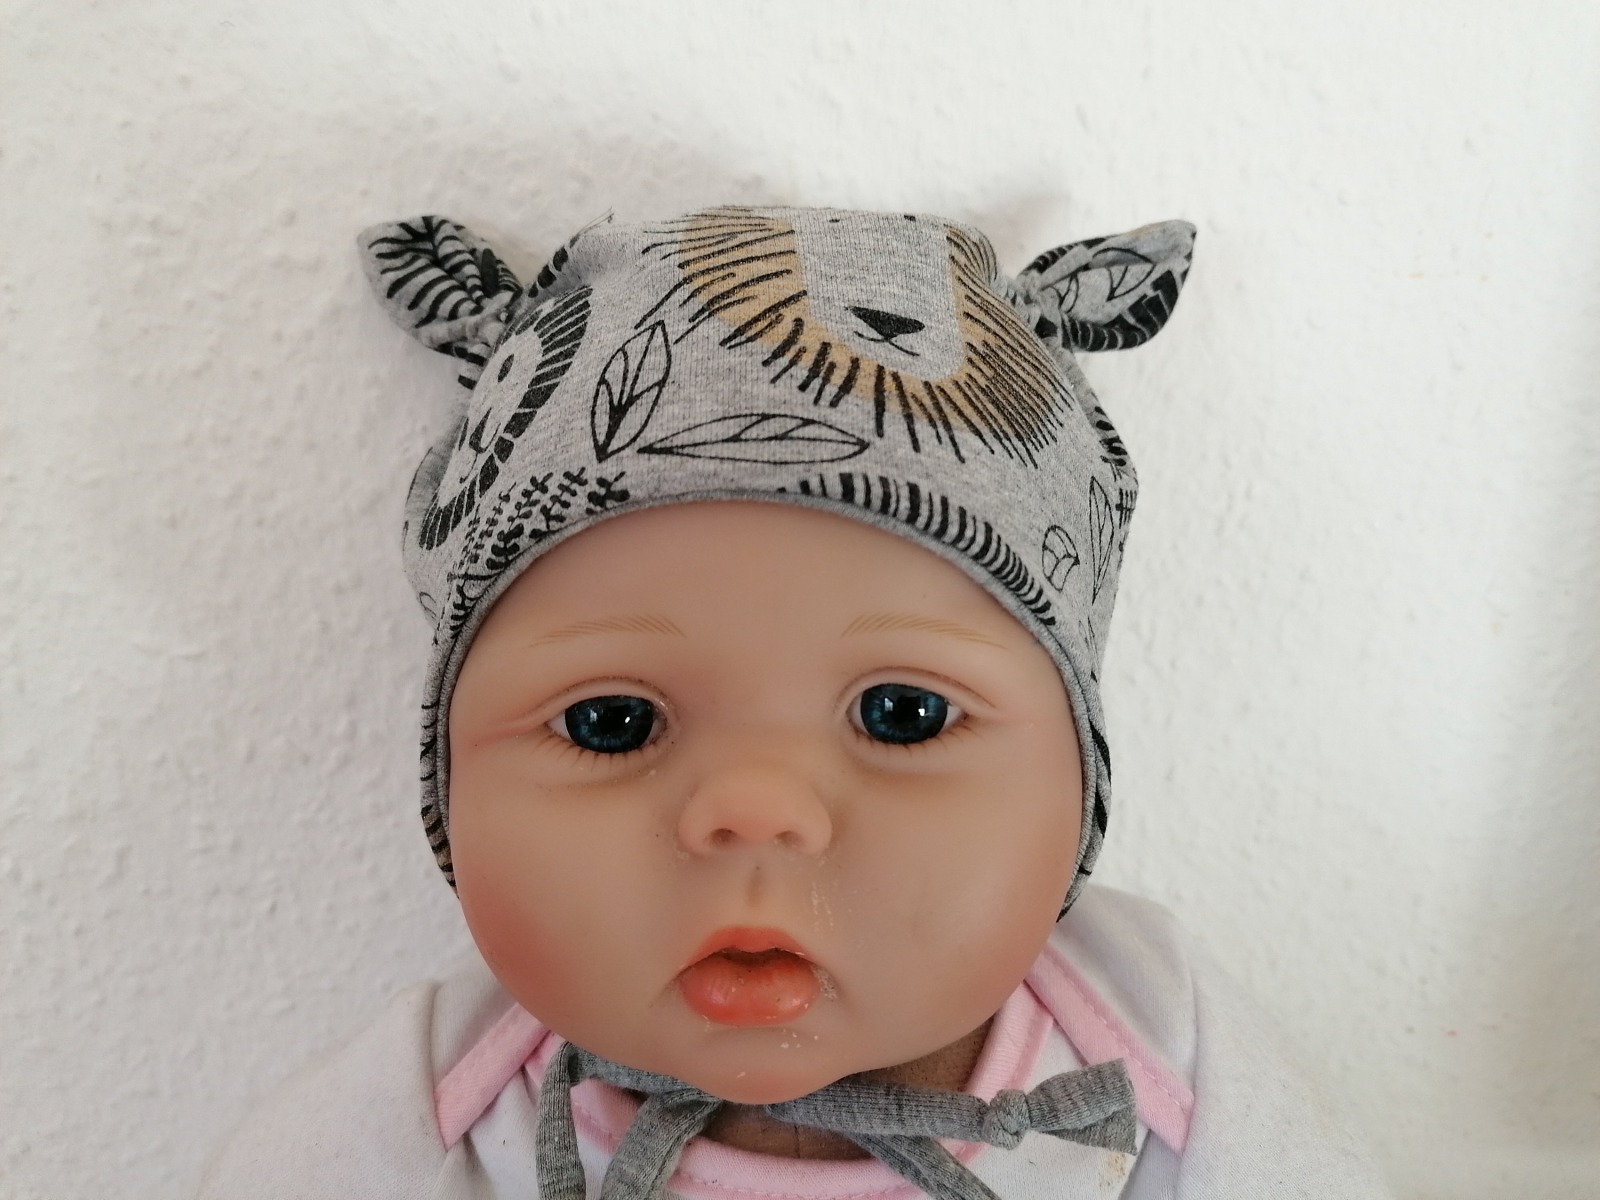 Baby Kind Ohrenmütze mit und ohne Bindebänder Kopfumfang 35 - 52cm Hafenkitz lila blau weiß Mütze mit Ohren Bindemütze Babymütze Kindermütze 3